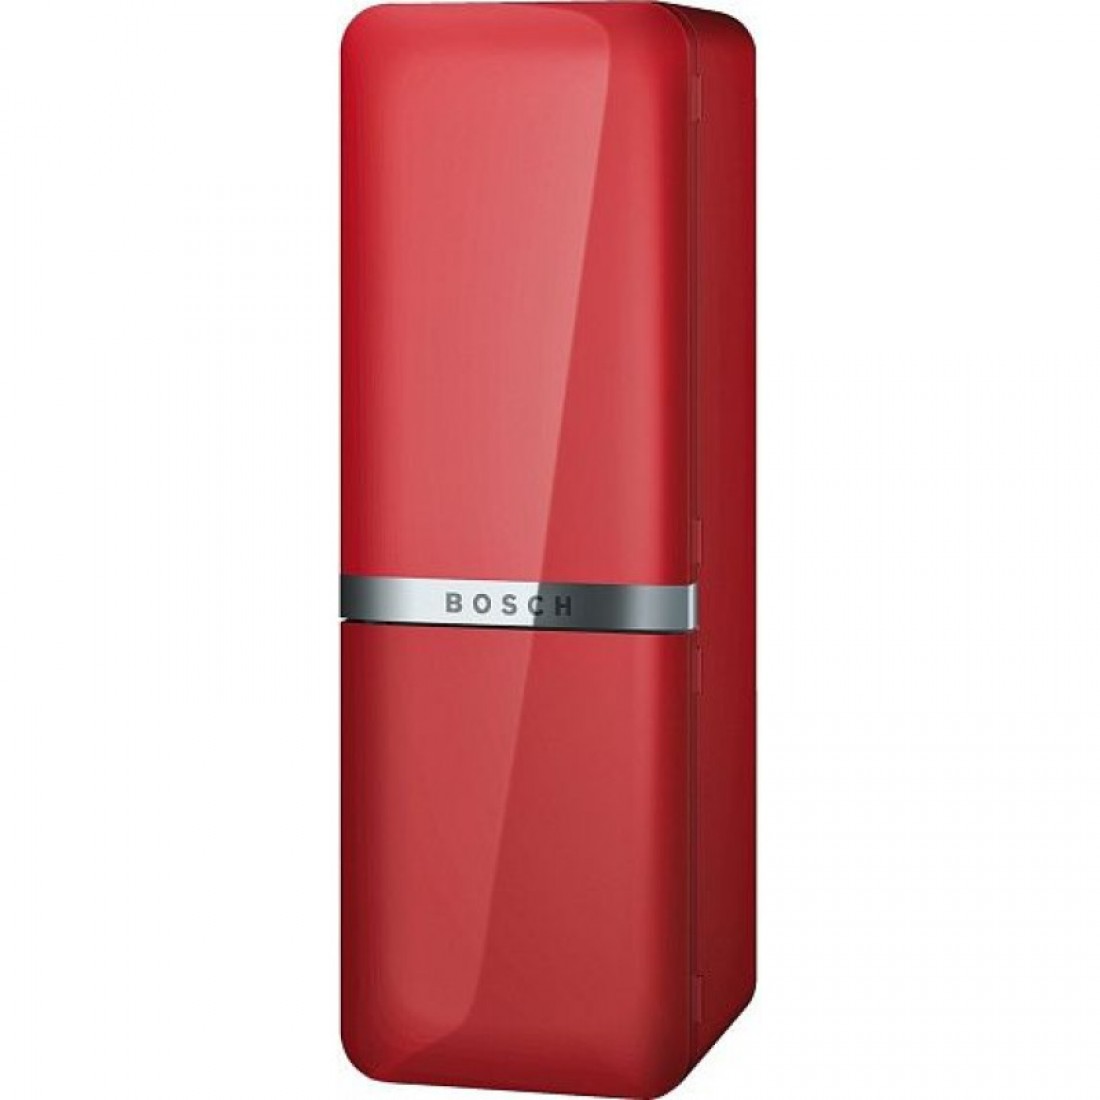 Холодильник купить в набережных. Bosch kce40ar40. Bosch kce40ar40 красный. Холодильник Bosch kcn40ar30r serie. Холодильник бош двухкамерный красный.